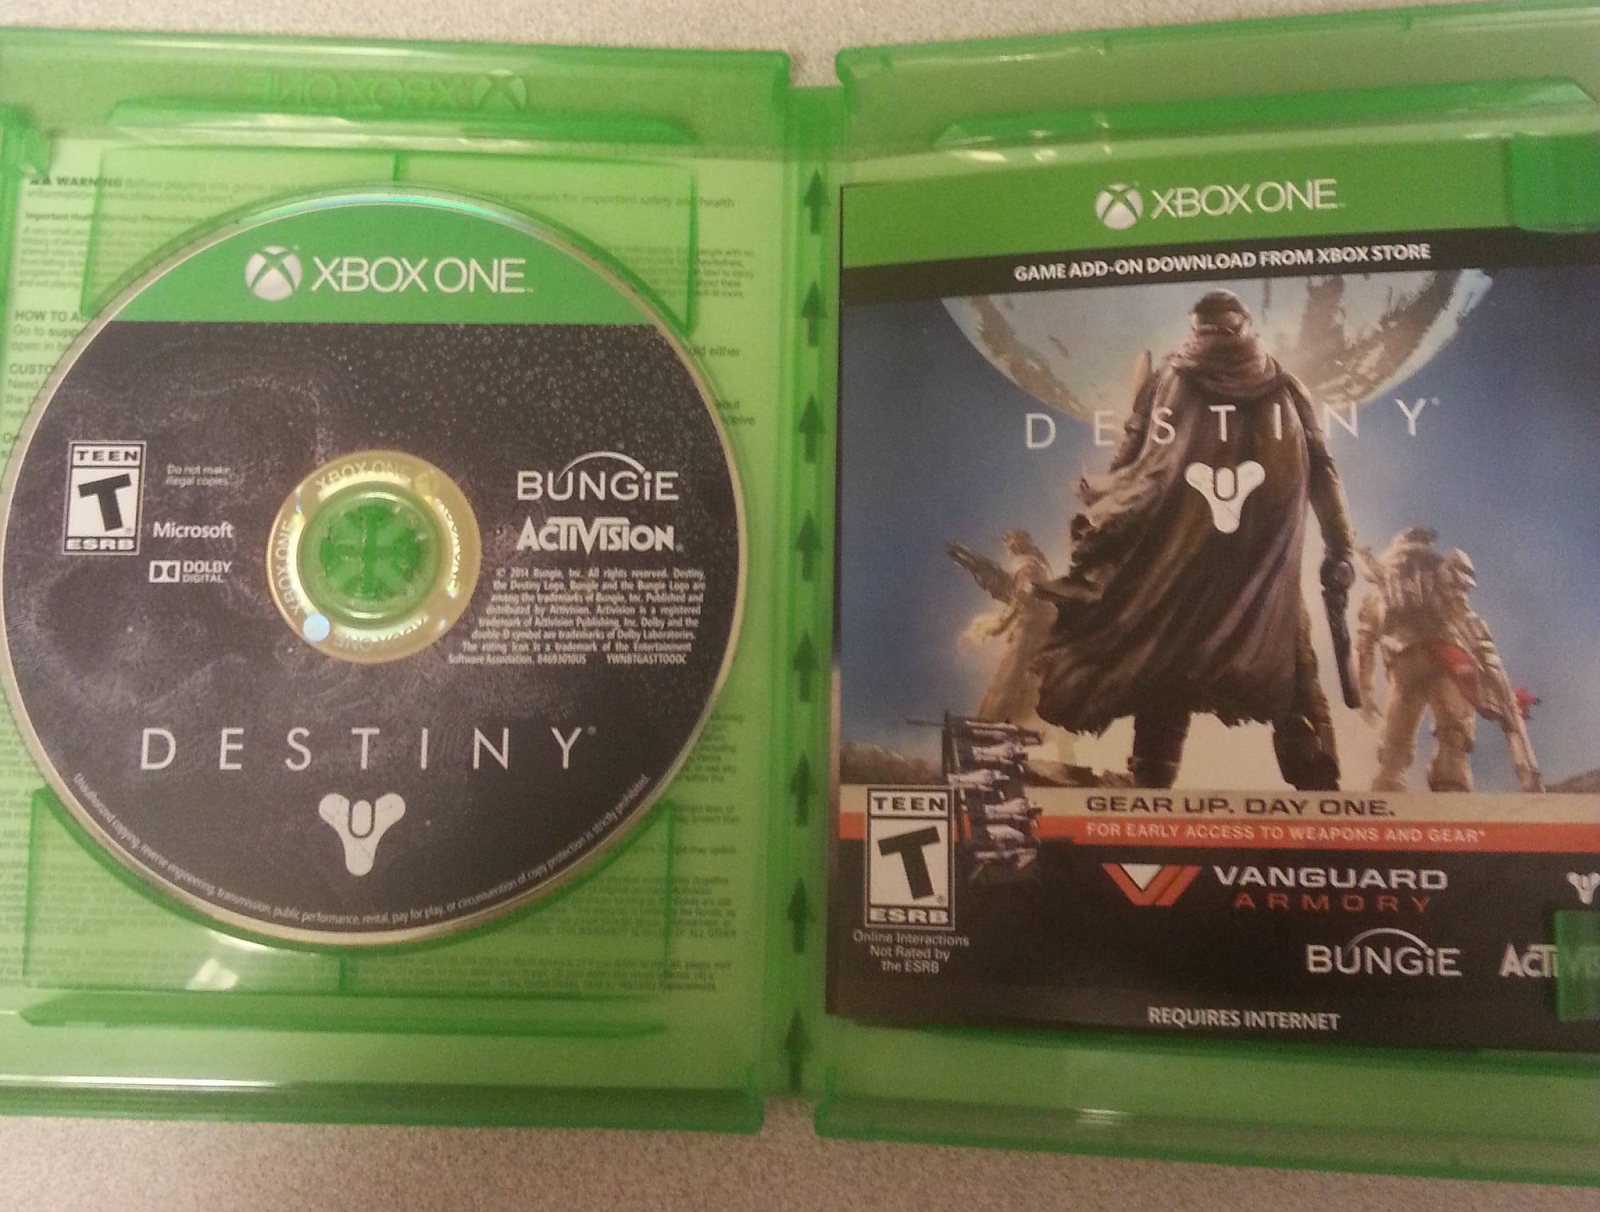 Игра Destiny займет на Xbox One 40 Гб свободного места: с сайта NEWXBOXONE.RU